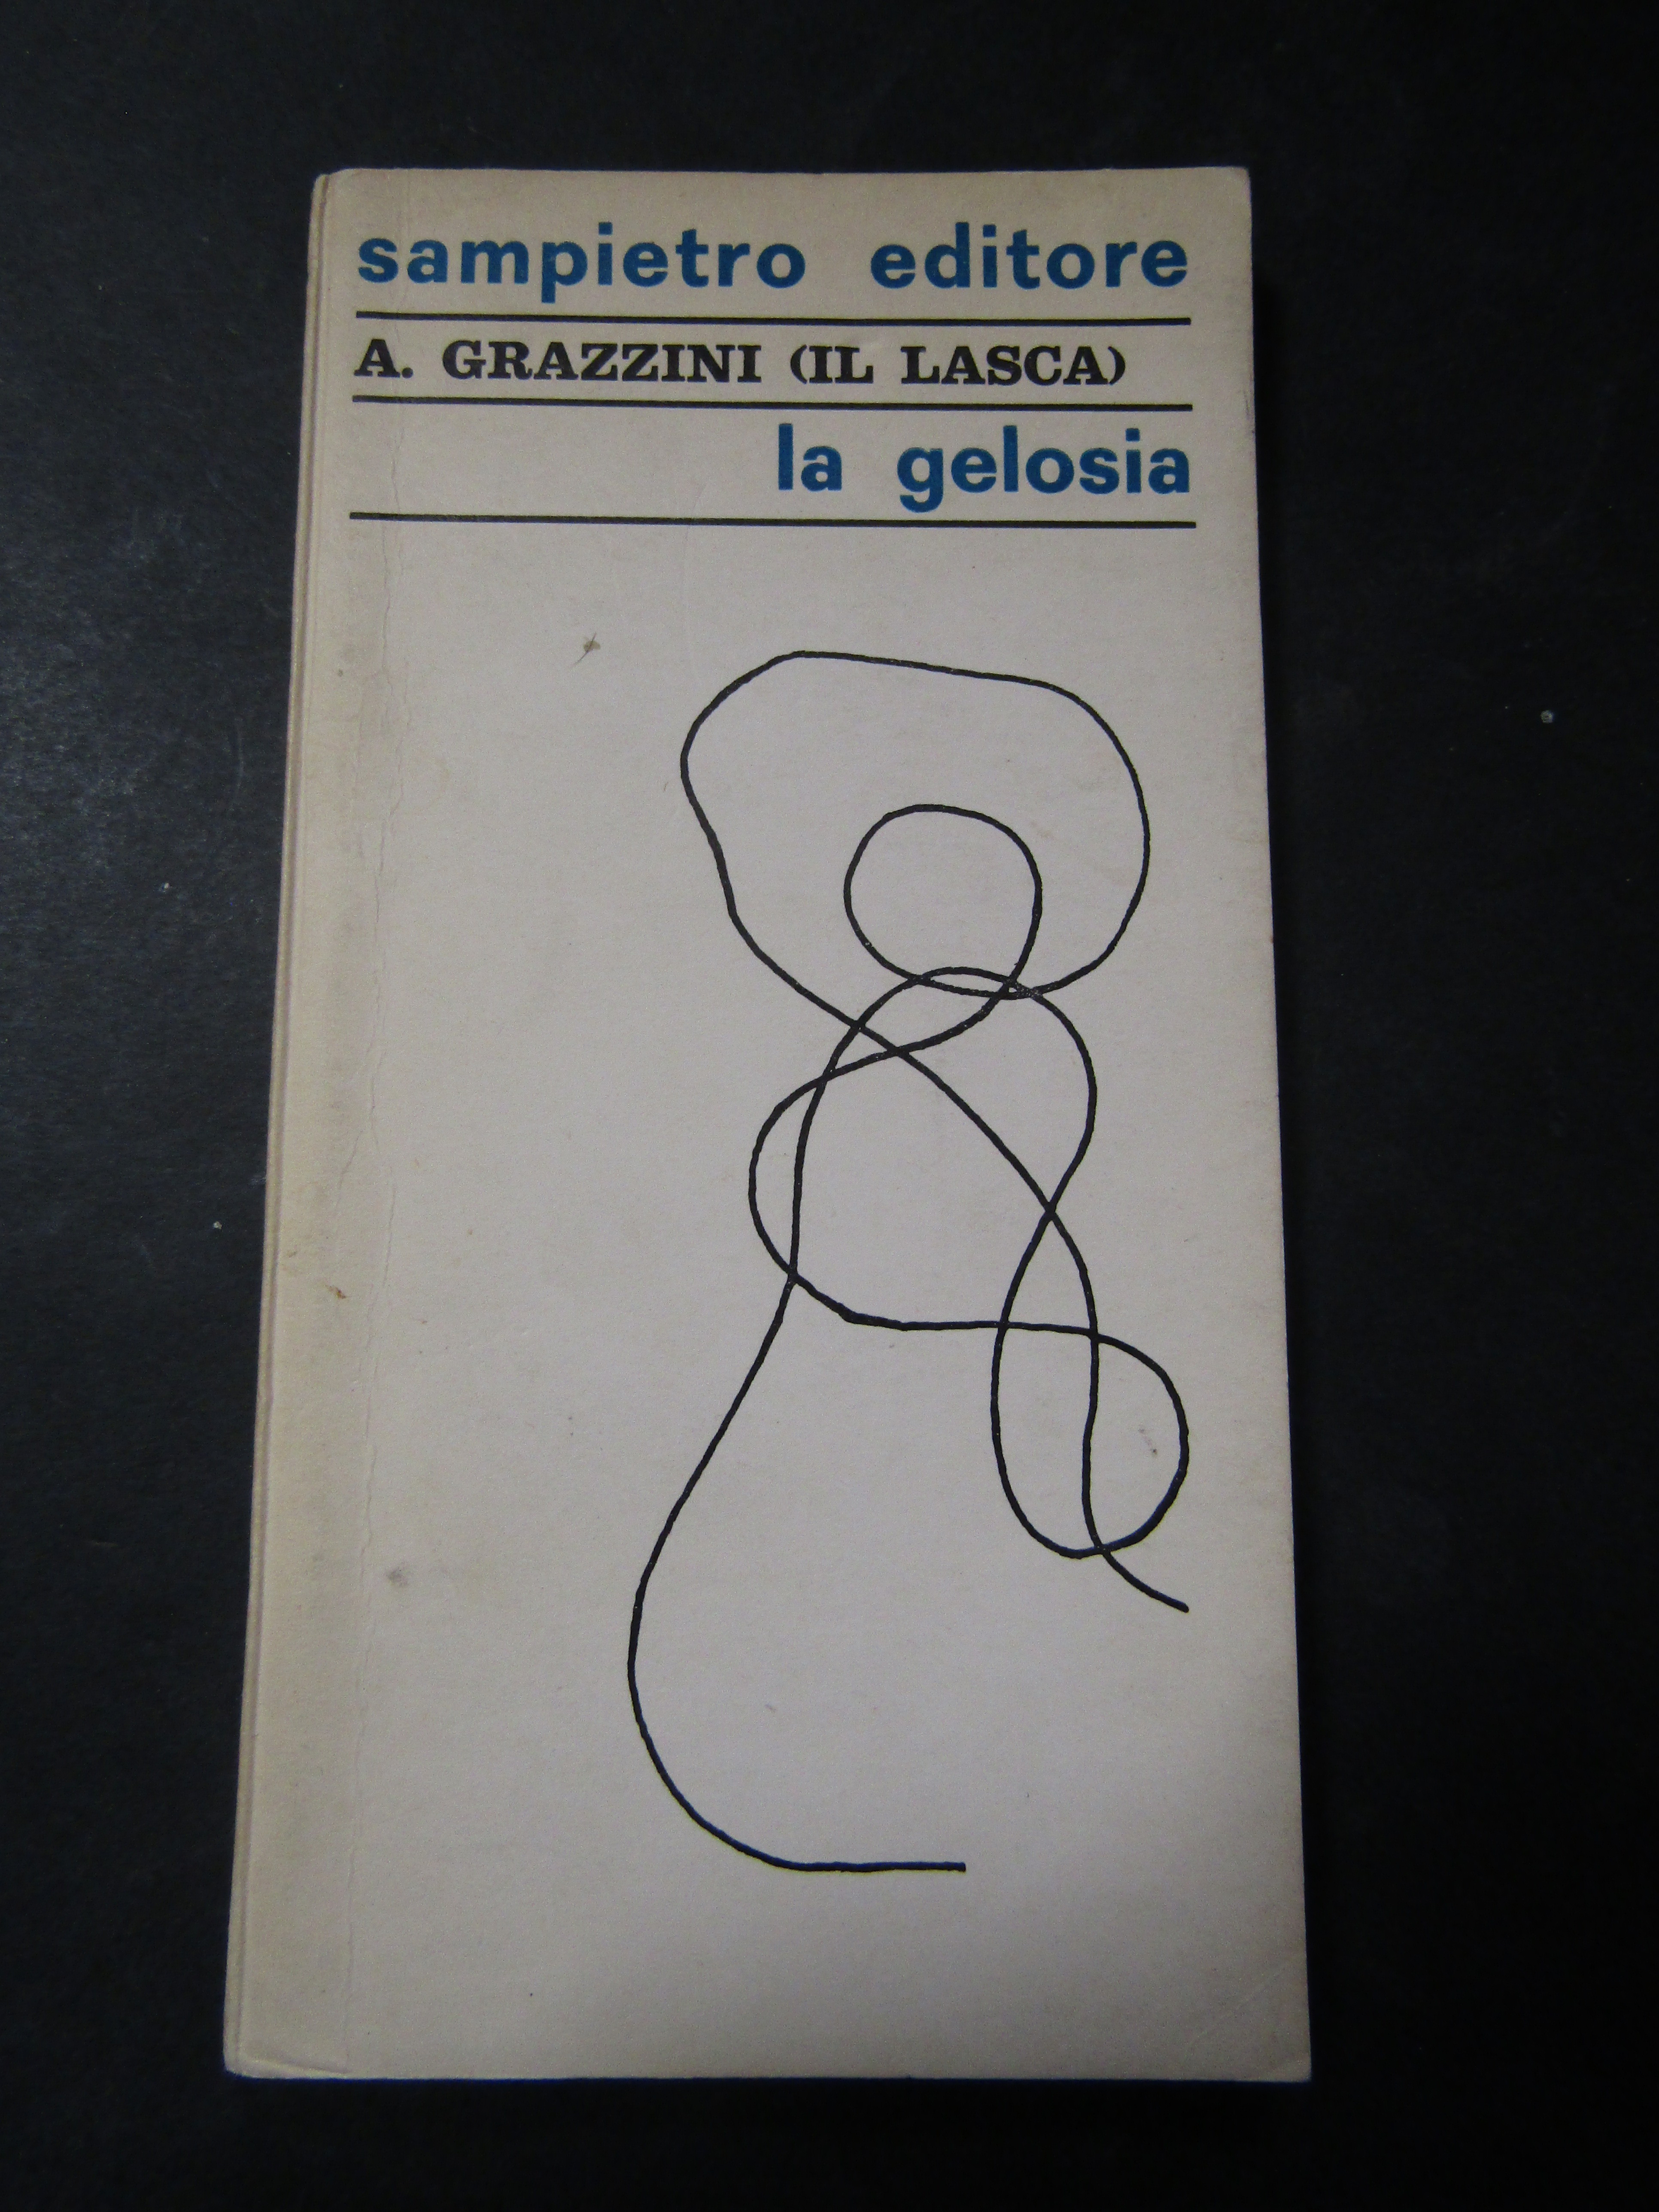 Grazzini A. La gelosia. Sampietro editore. 1967